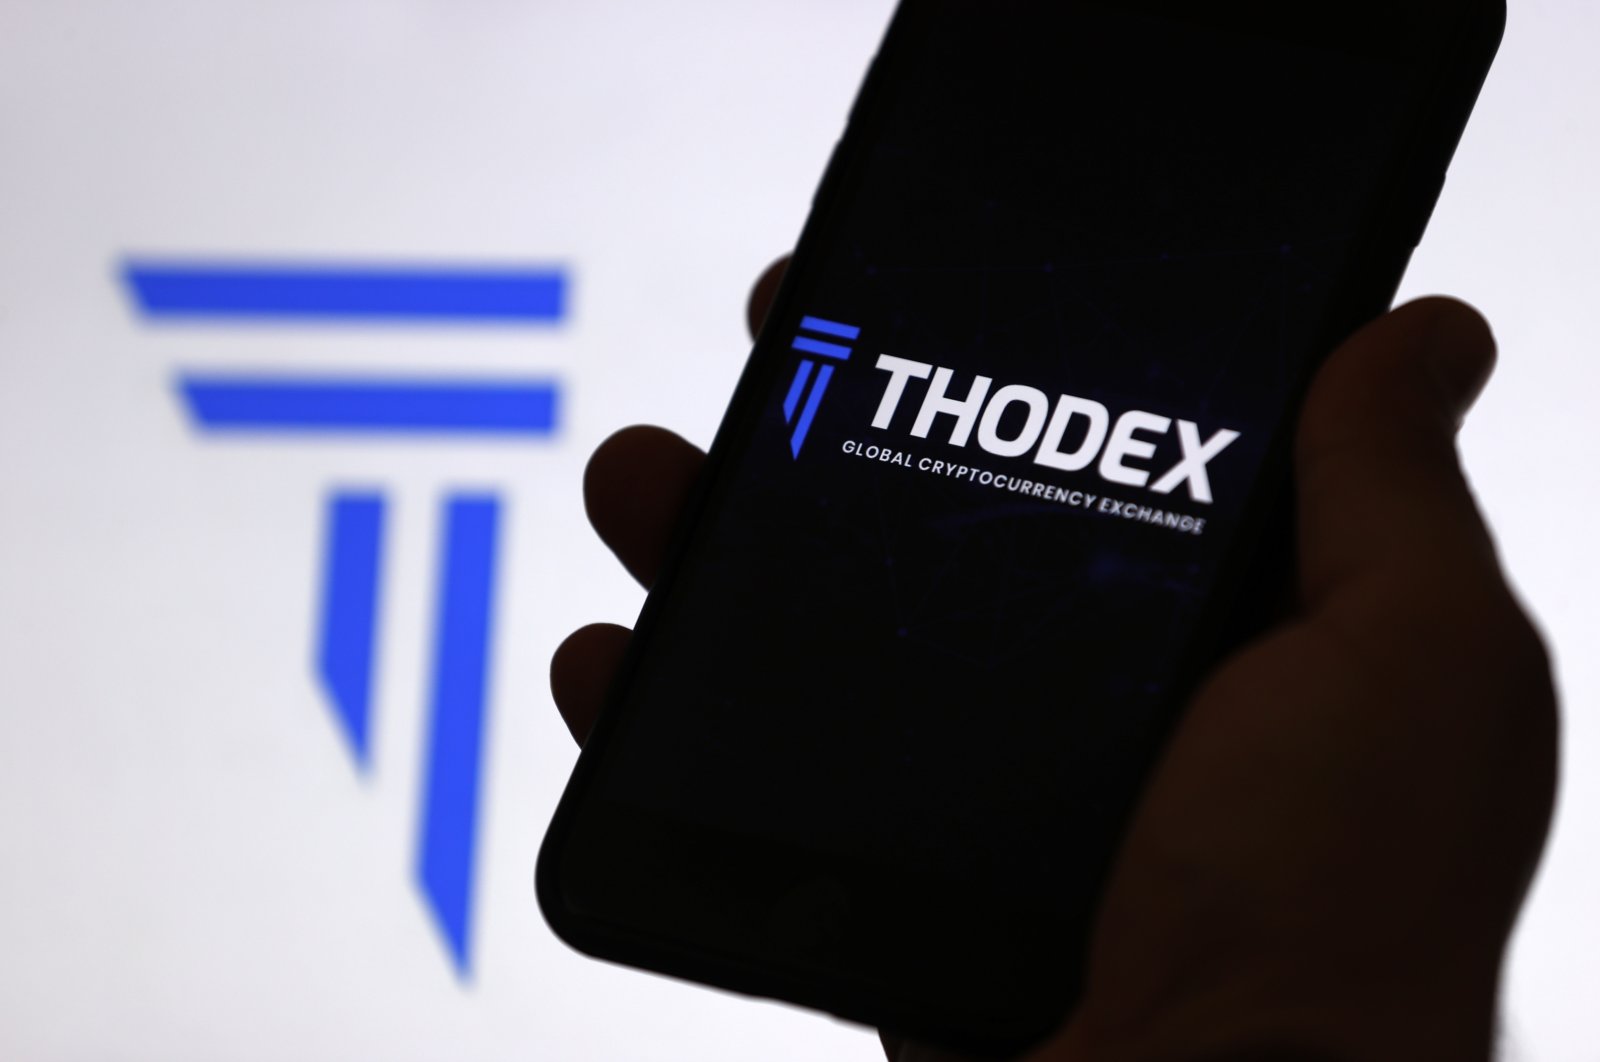 Başsavcılıktan Thodex açıklaması